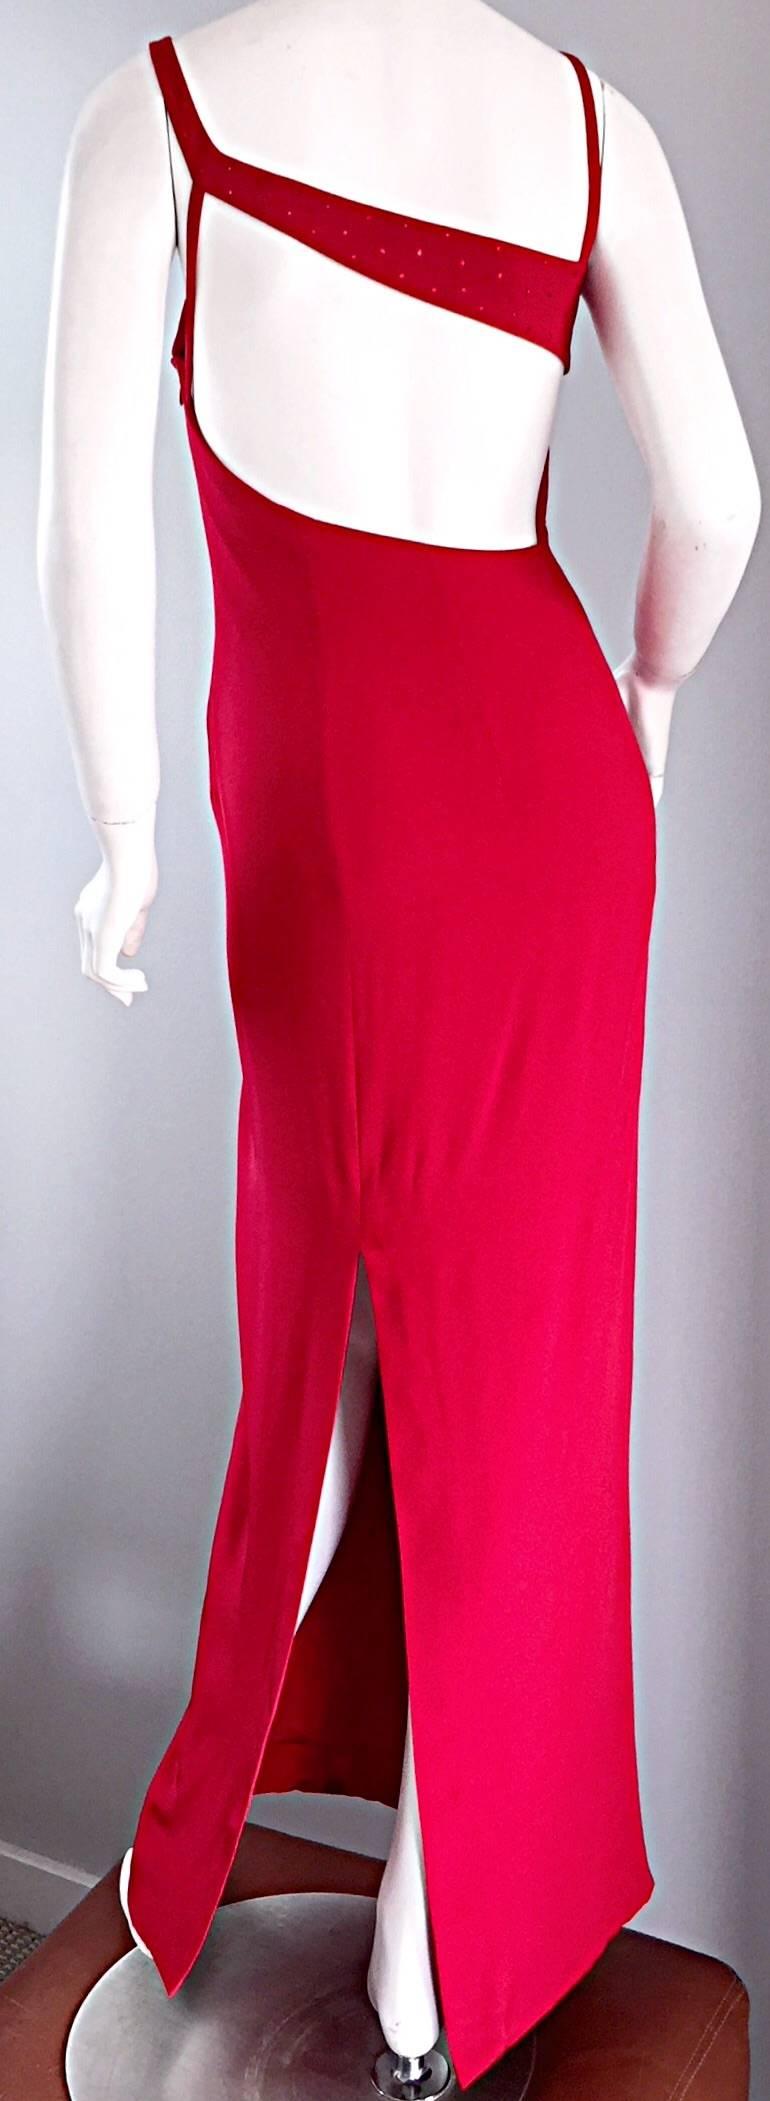 Sexiest 1990s Lane Davis von Beverly Hills rotes Avant Garde Kleid! AMAZING Schnitt, das sieht zum Sterben auf! Lippenstiftrot, durchgehend mit roten Strasssteinen besetzt. Couture-Qualität! Der asymmetrische Schlitz harmoniert fantastisch mit dem